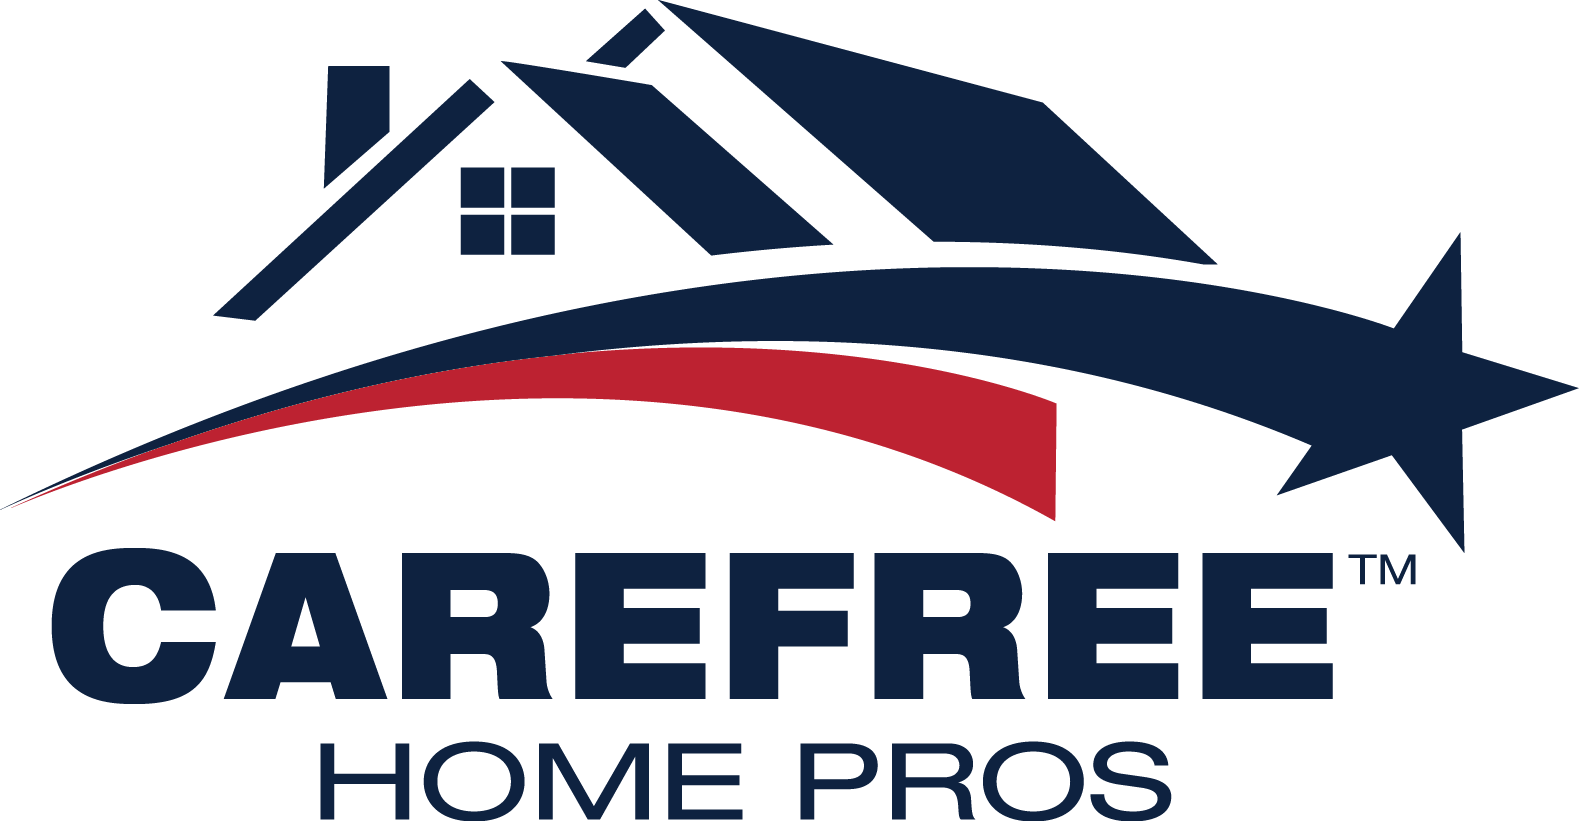 CareFree Home Pros